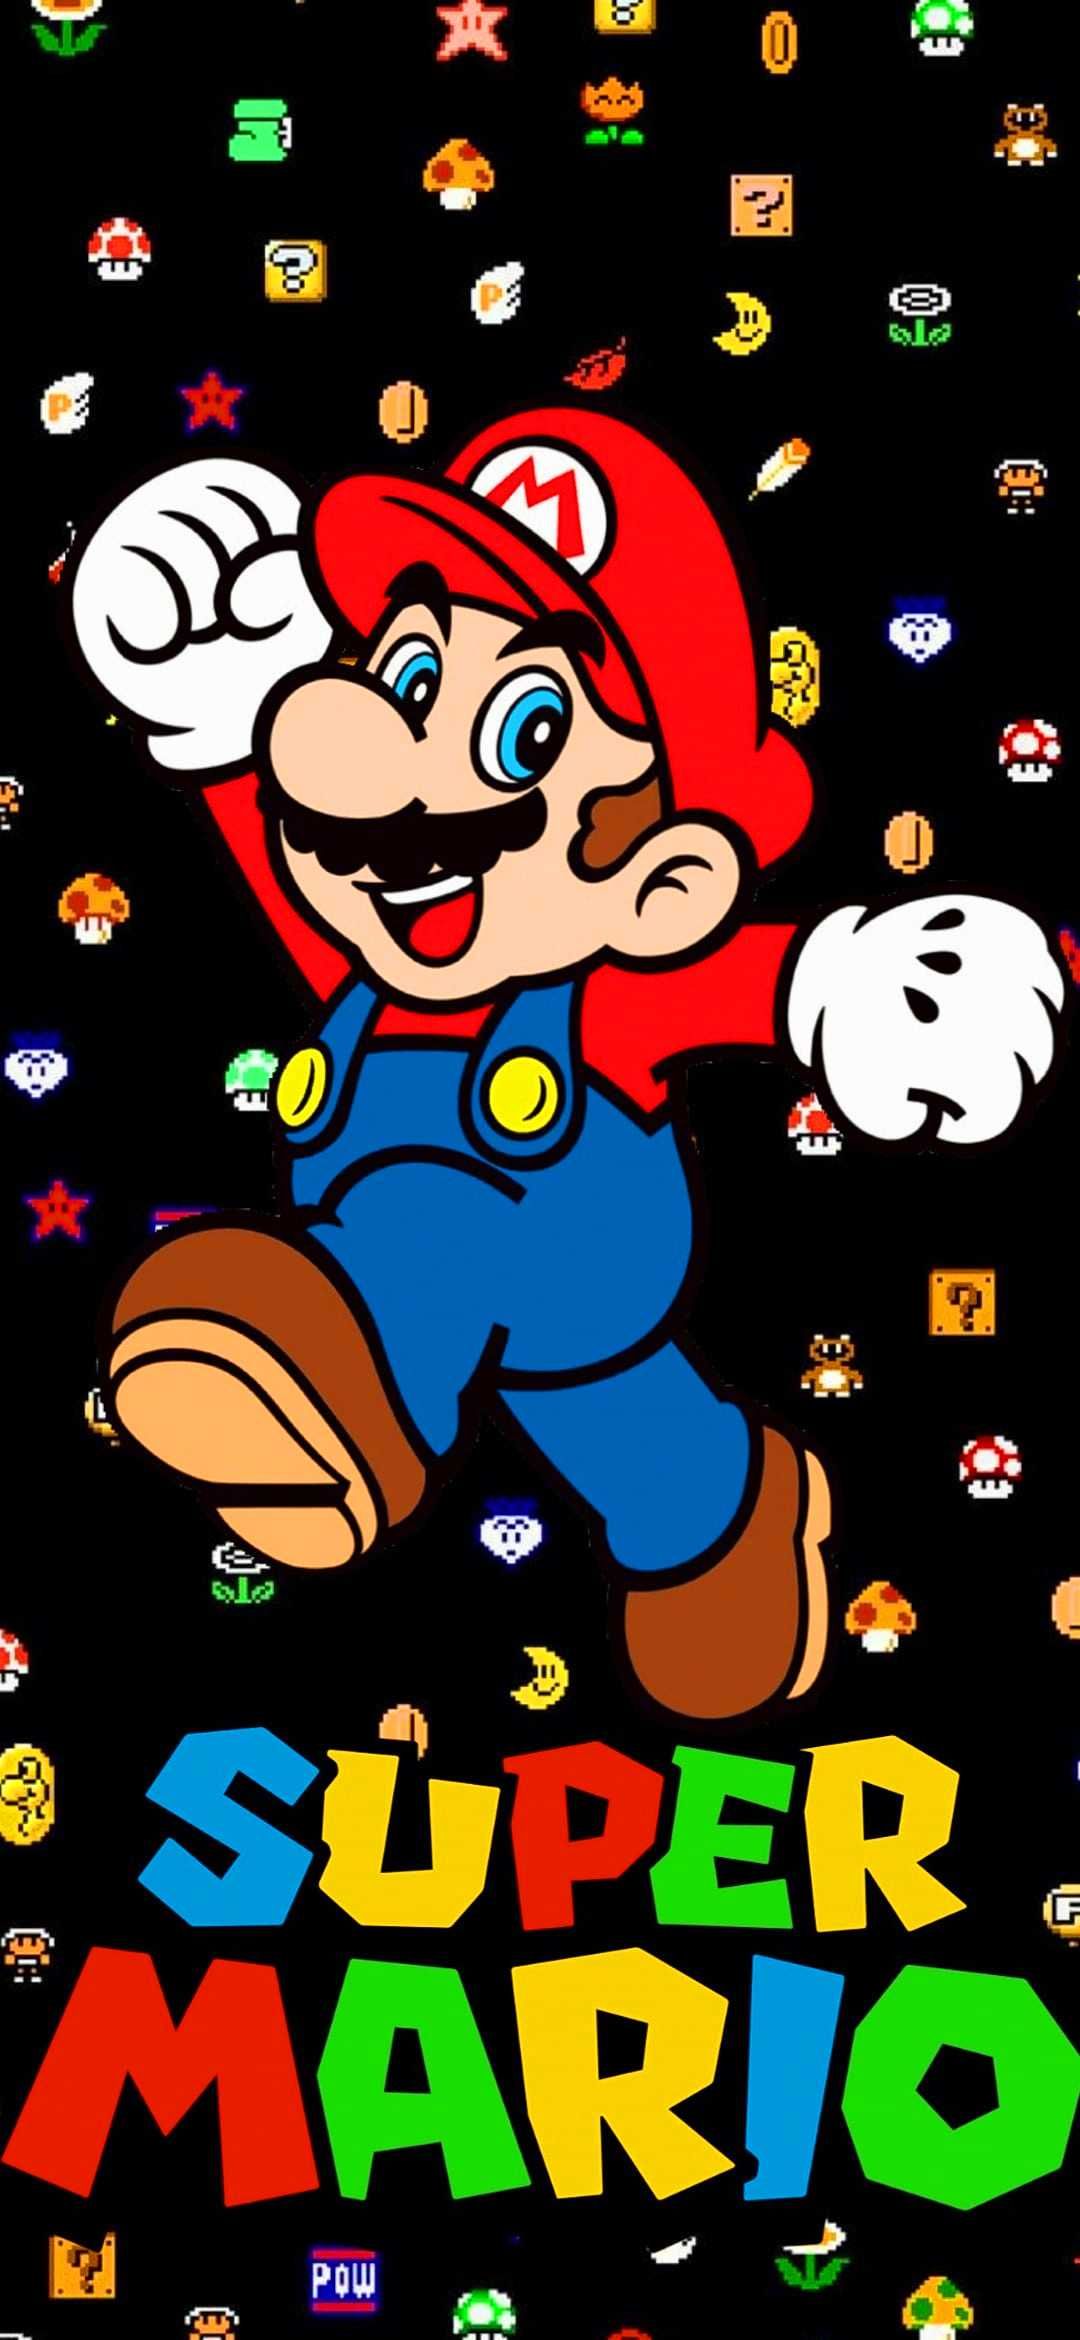 Super Mario Wallpaper Discover More Game, Mario, Mario Bros, Smash Bros, Super Mario Wallpaper. /super Mario W. Mario, Super Mario, Mario Art